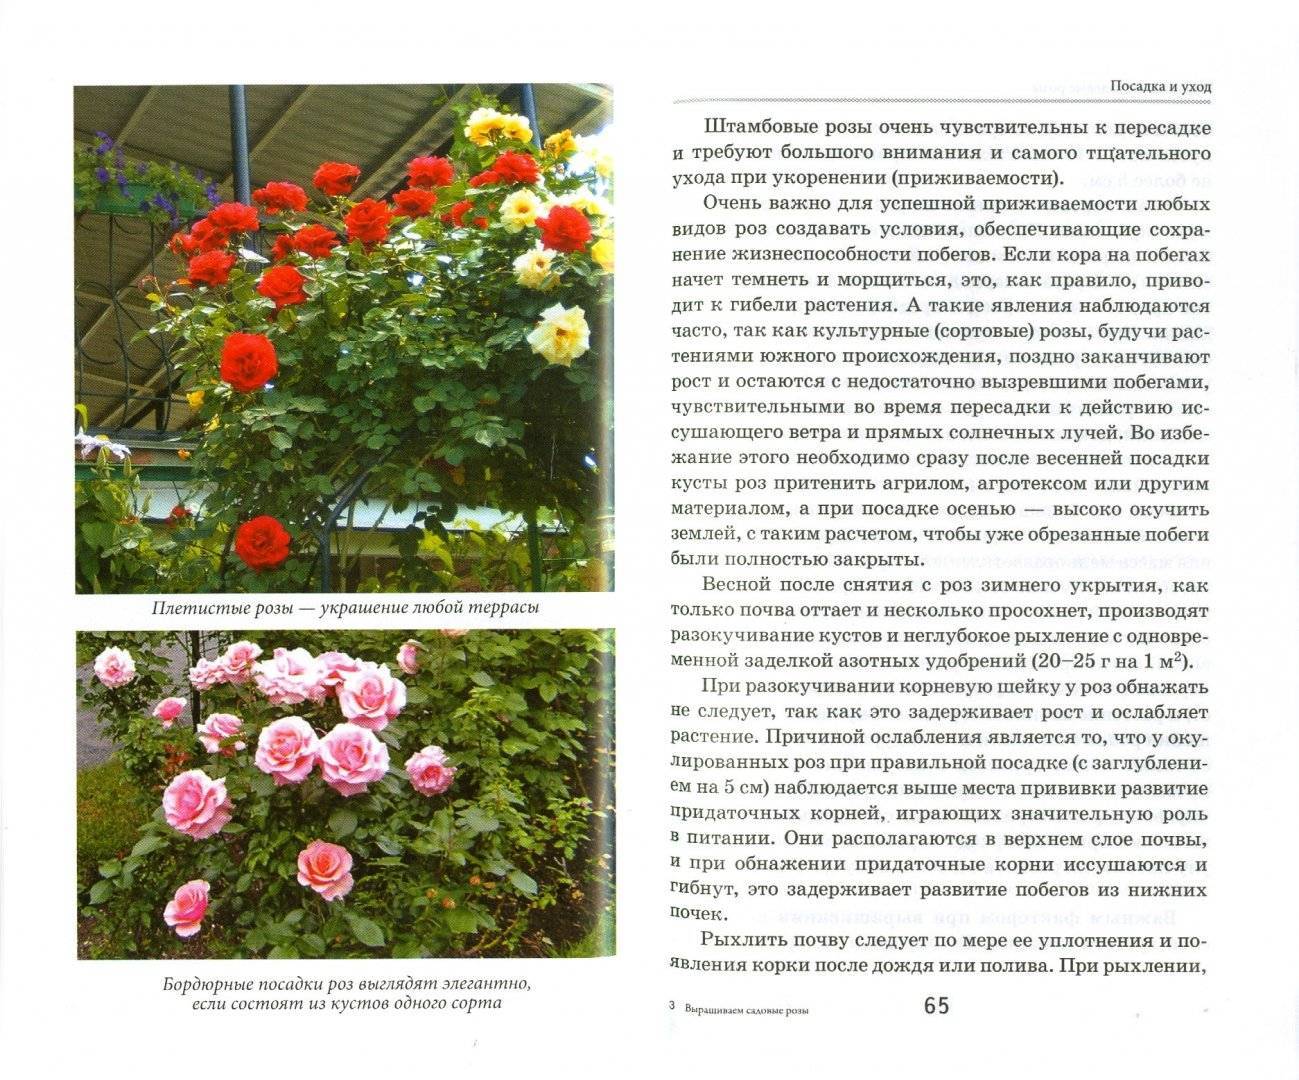 Эльф роза - описание сорта, основные характеристики, советы и отзывы по поводу выращивания